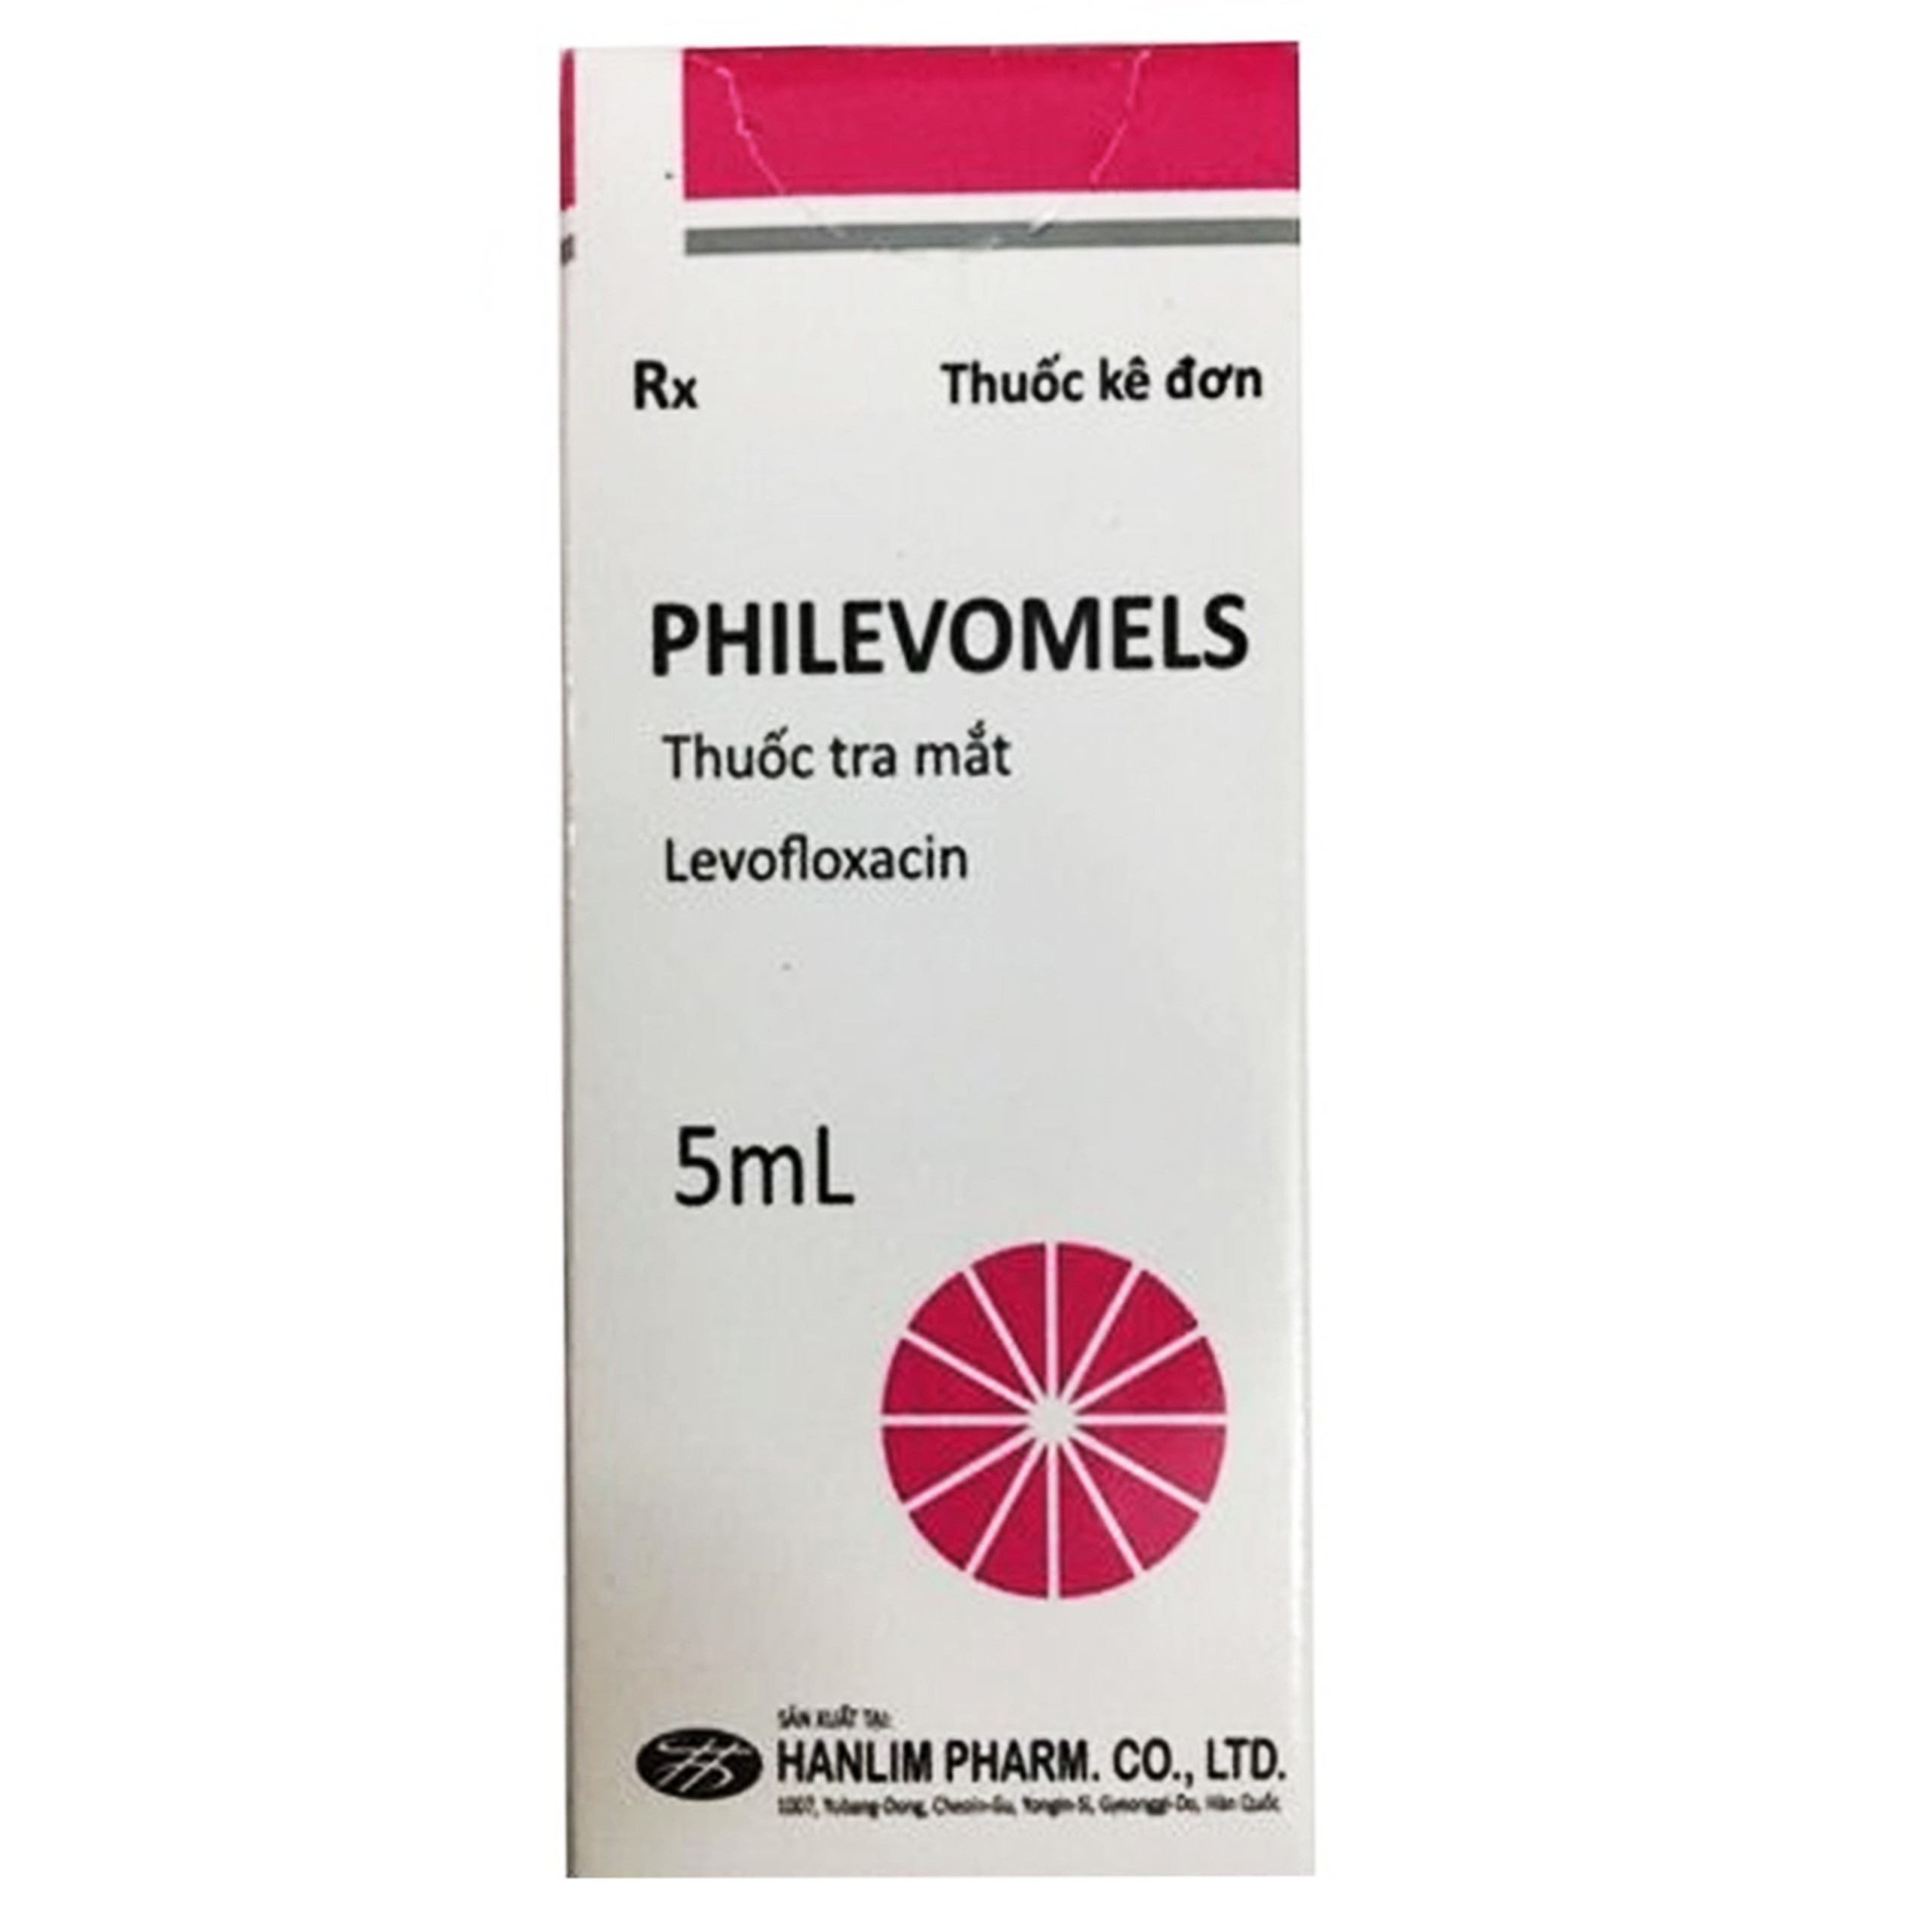 Thuốc tra mắt Philevomels Hanlim điều trị viêm bờ mi, lẹo, viêm túi lệ (5ml)